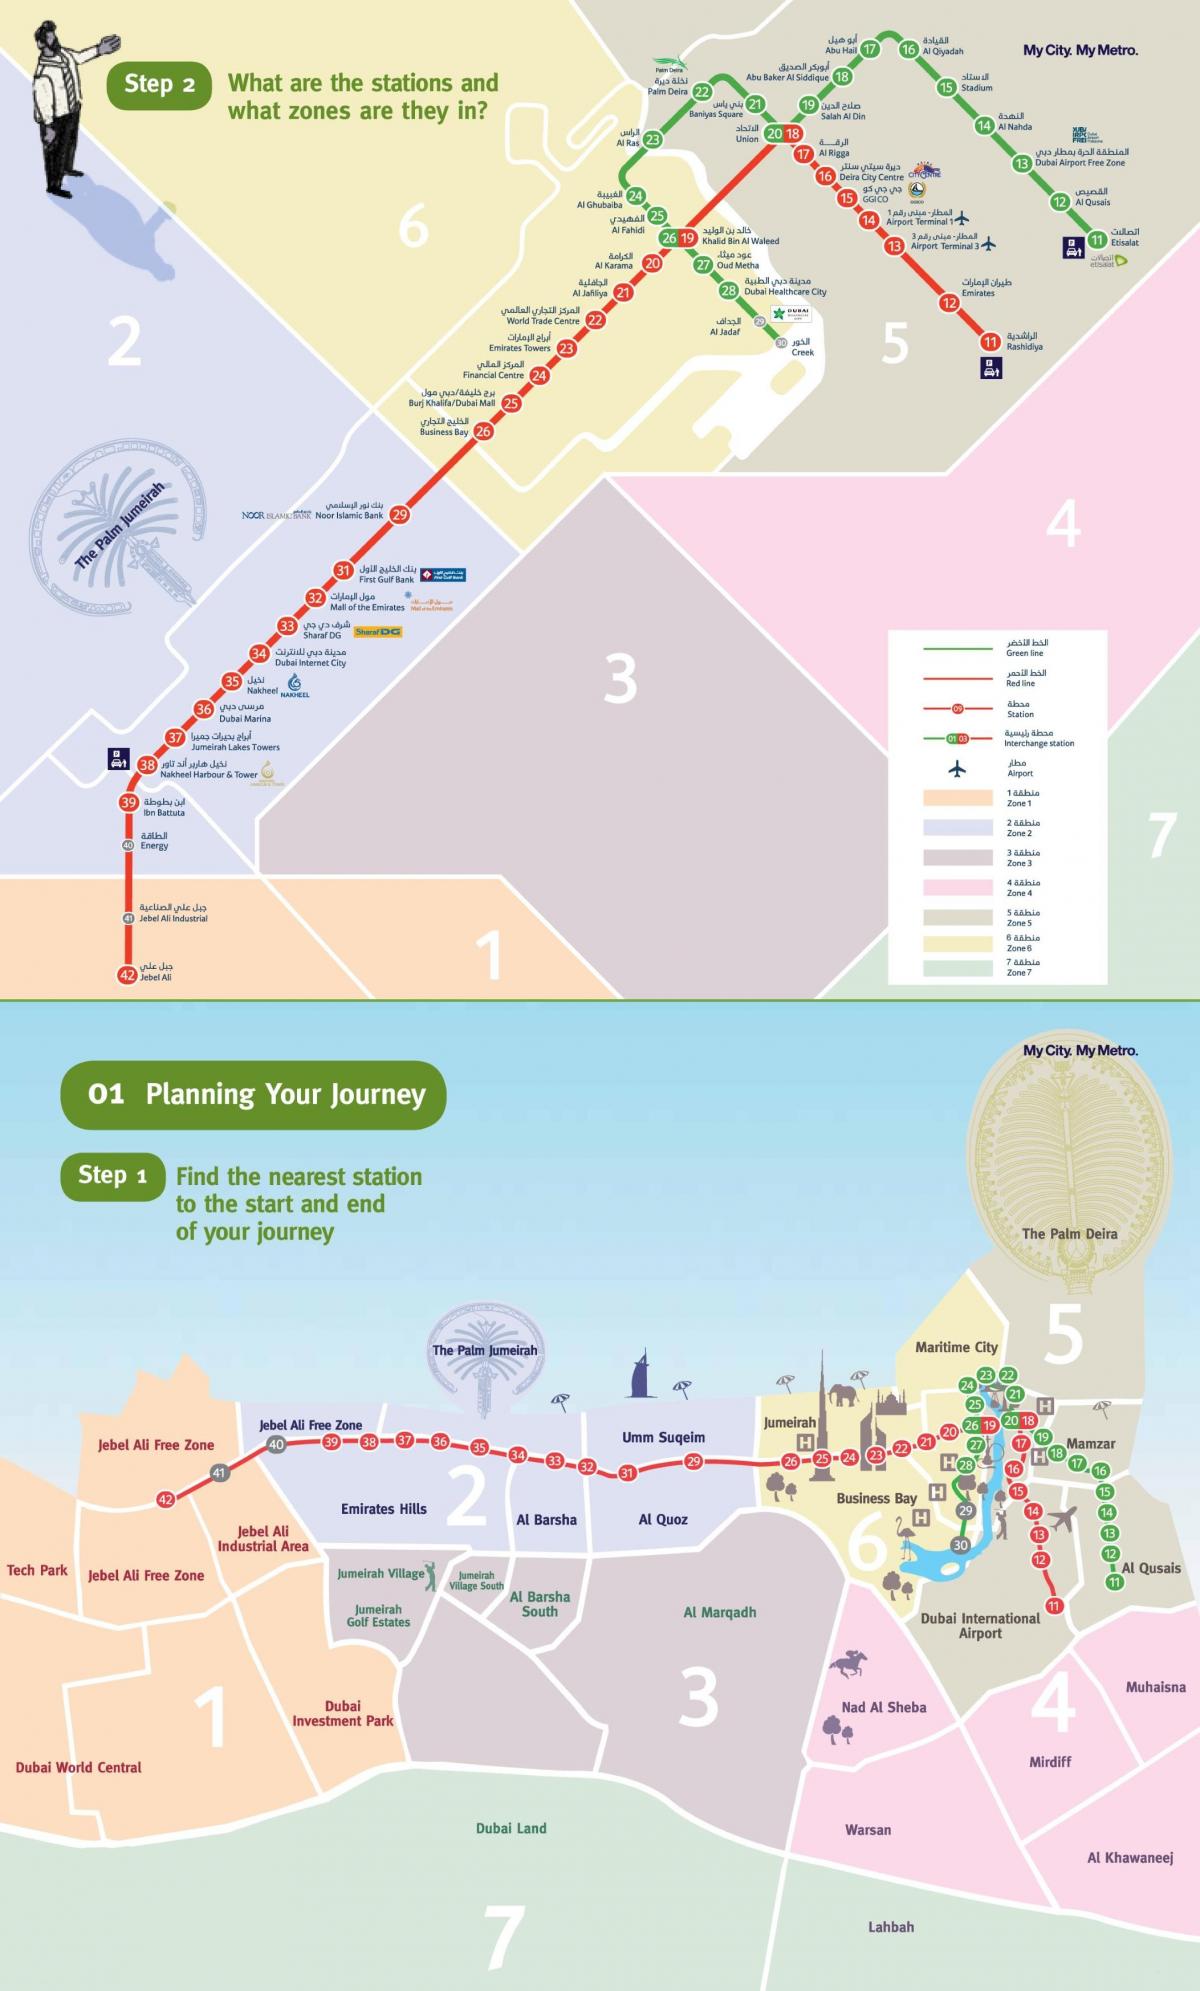 Dubai línia vermella del metro mapa